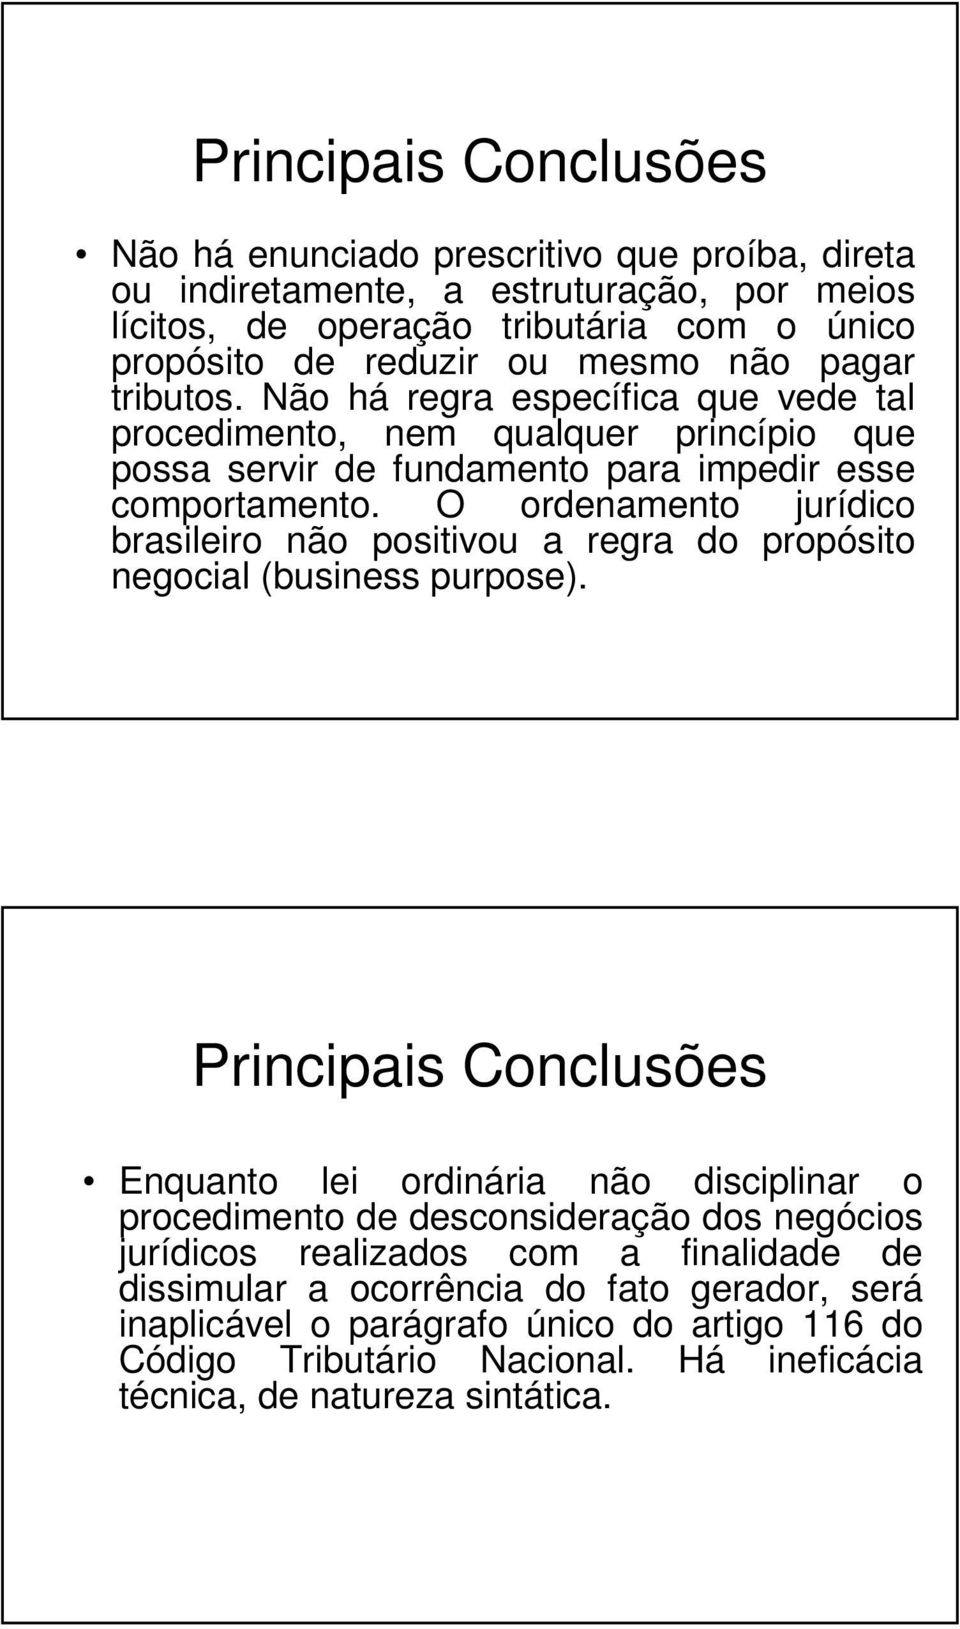 O ordenamento jurídico brasileiro não positivou a regra do propósito negocial (business purpose).